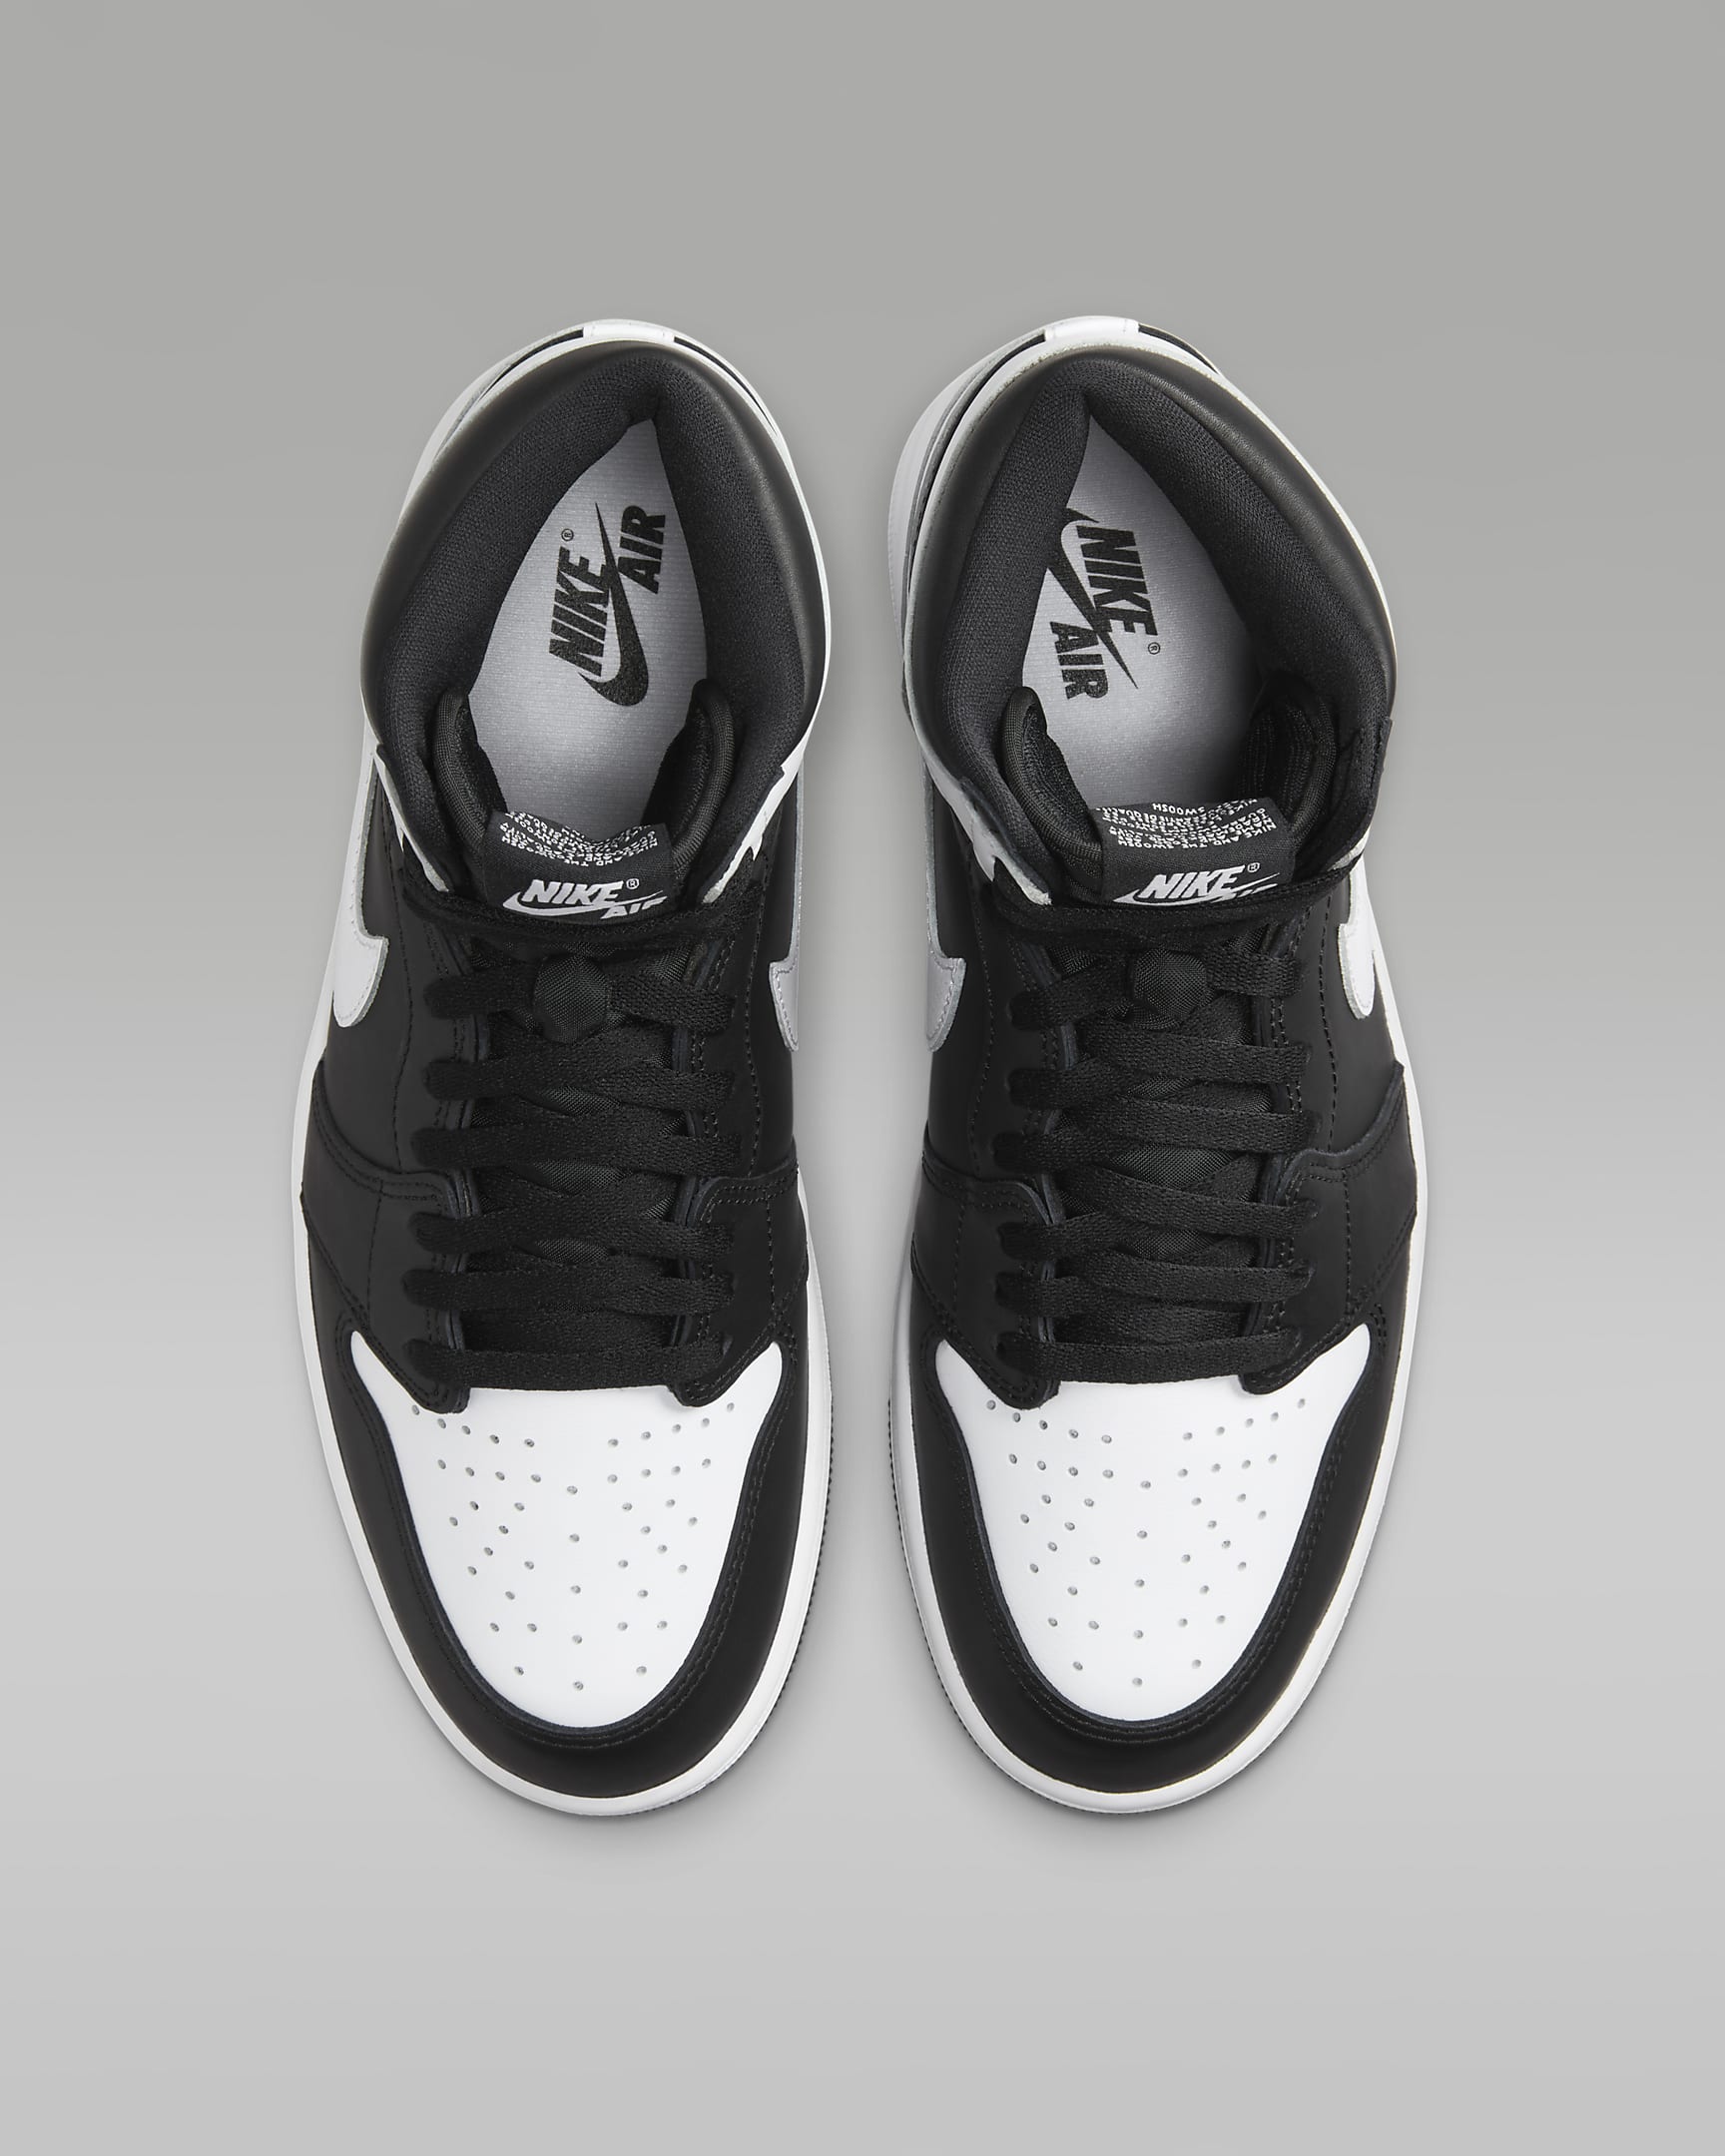 Air Jordan 1 Retro High OG "Black & White"